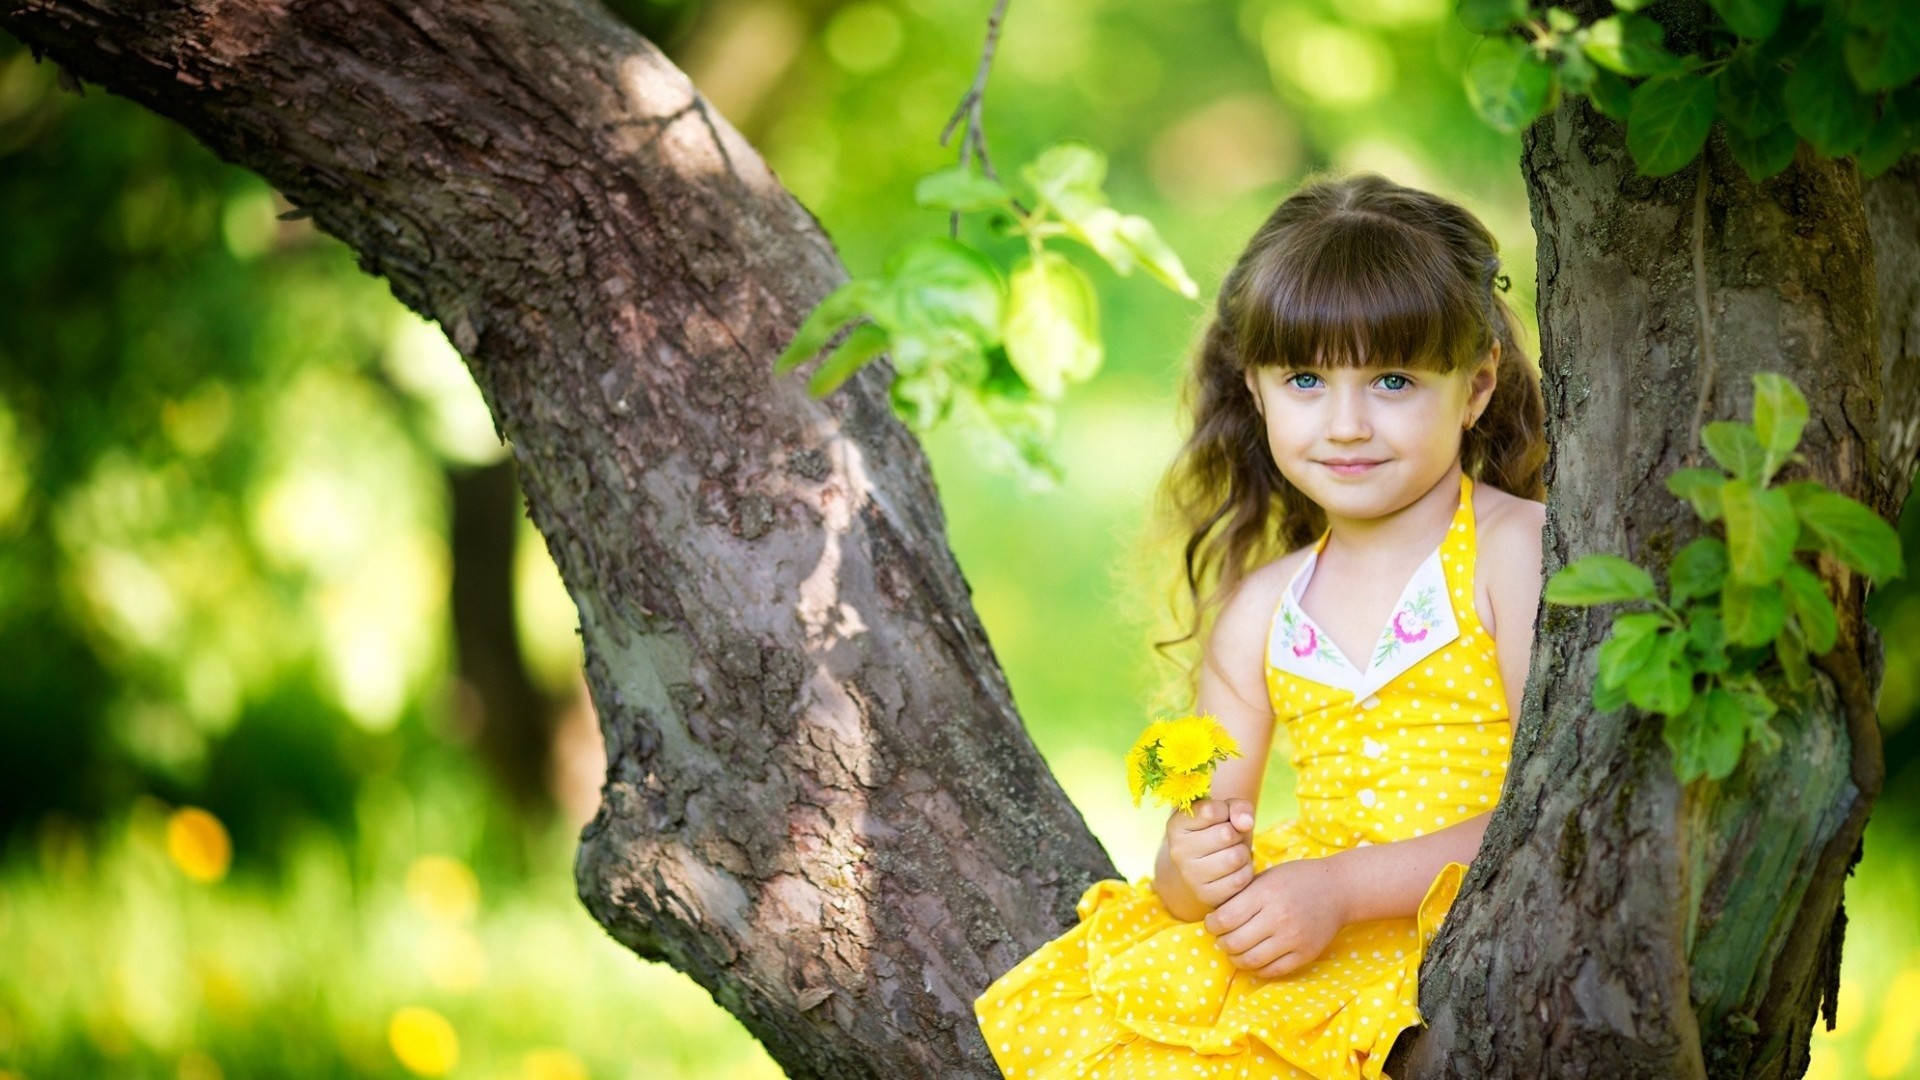 Wunderschönsteshd-bild Von Einem Süßen Kind In Gelb. Wallpaper